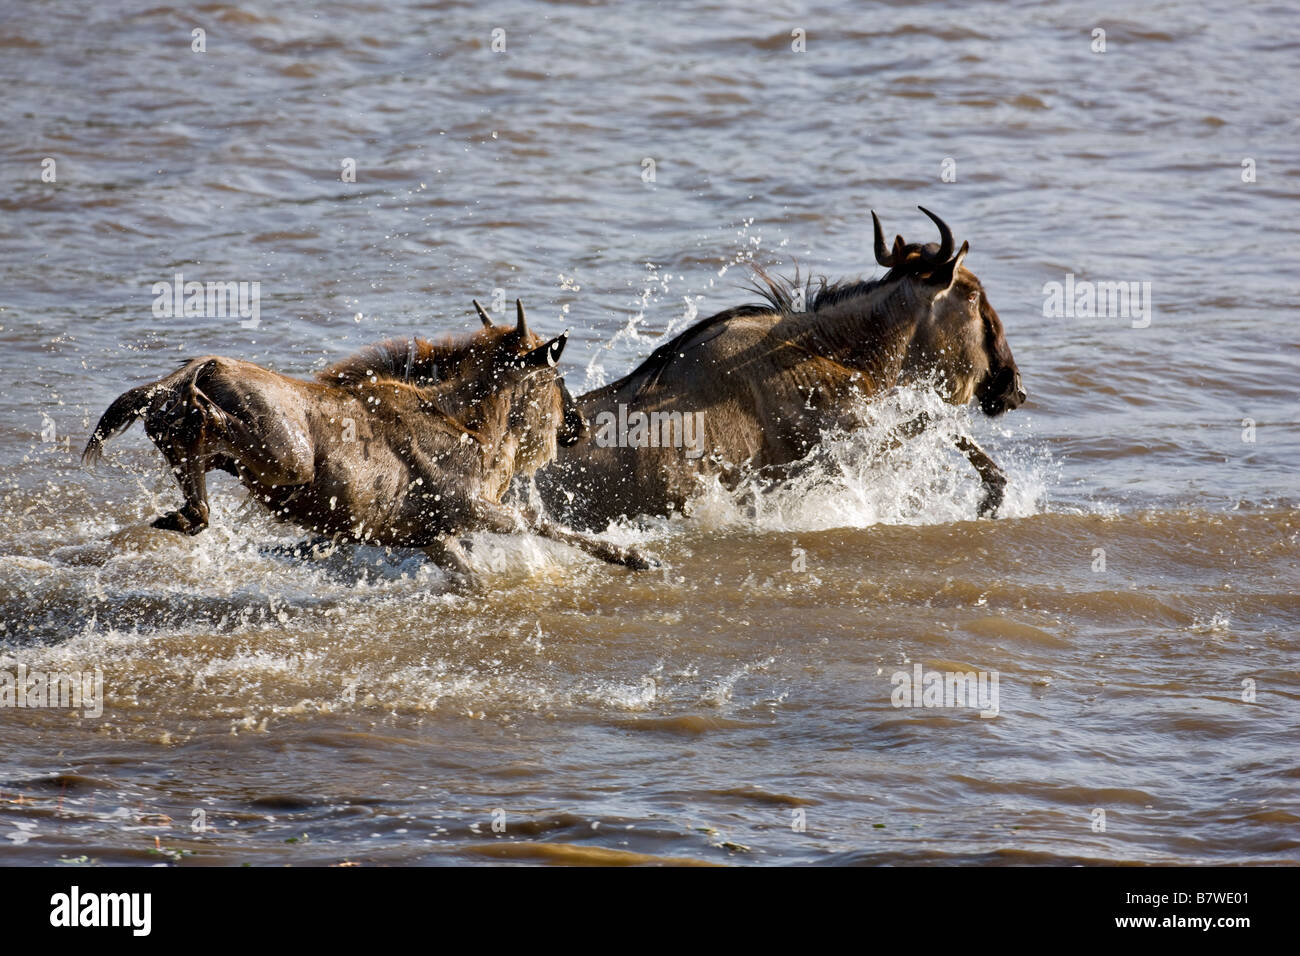 Kenya, Maasai Mara, district de Narok. Plonger dans l'gnous Mara River pendant leur migration annuelle Banque D'Images